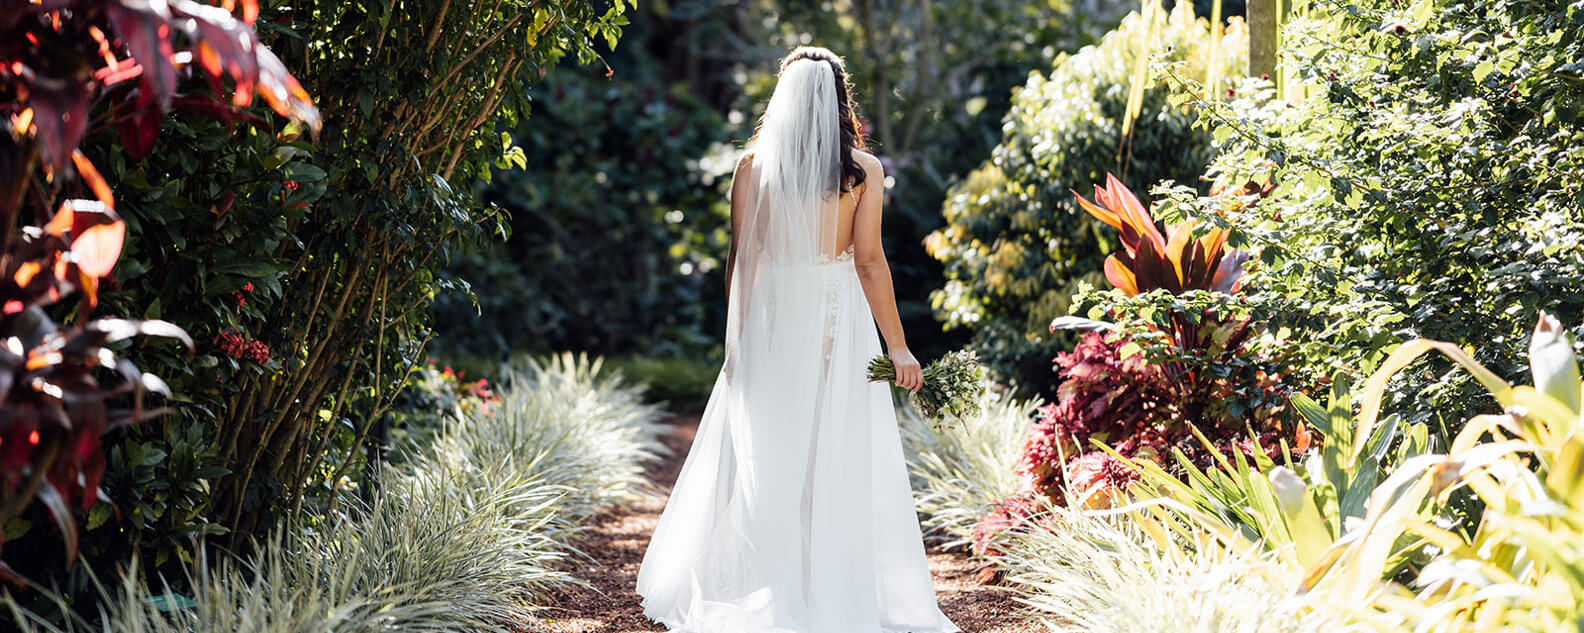 bride at the garden photoshoot 